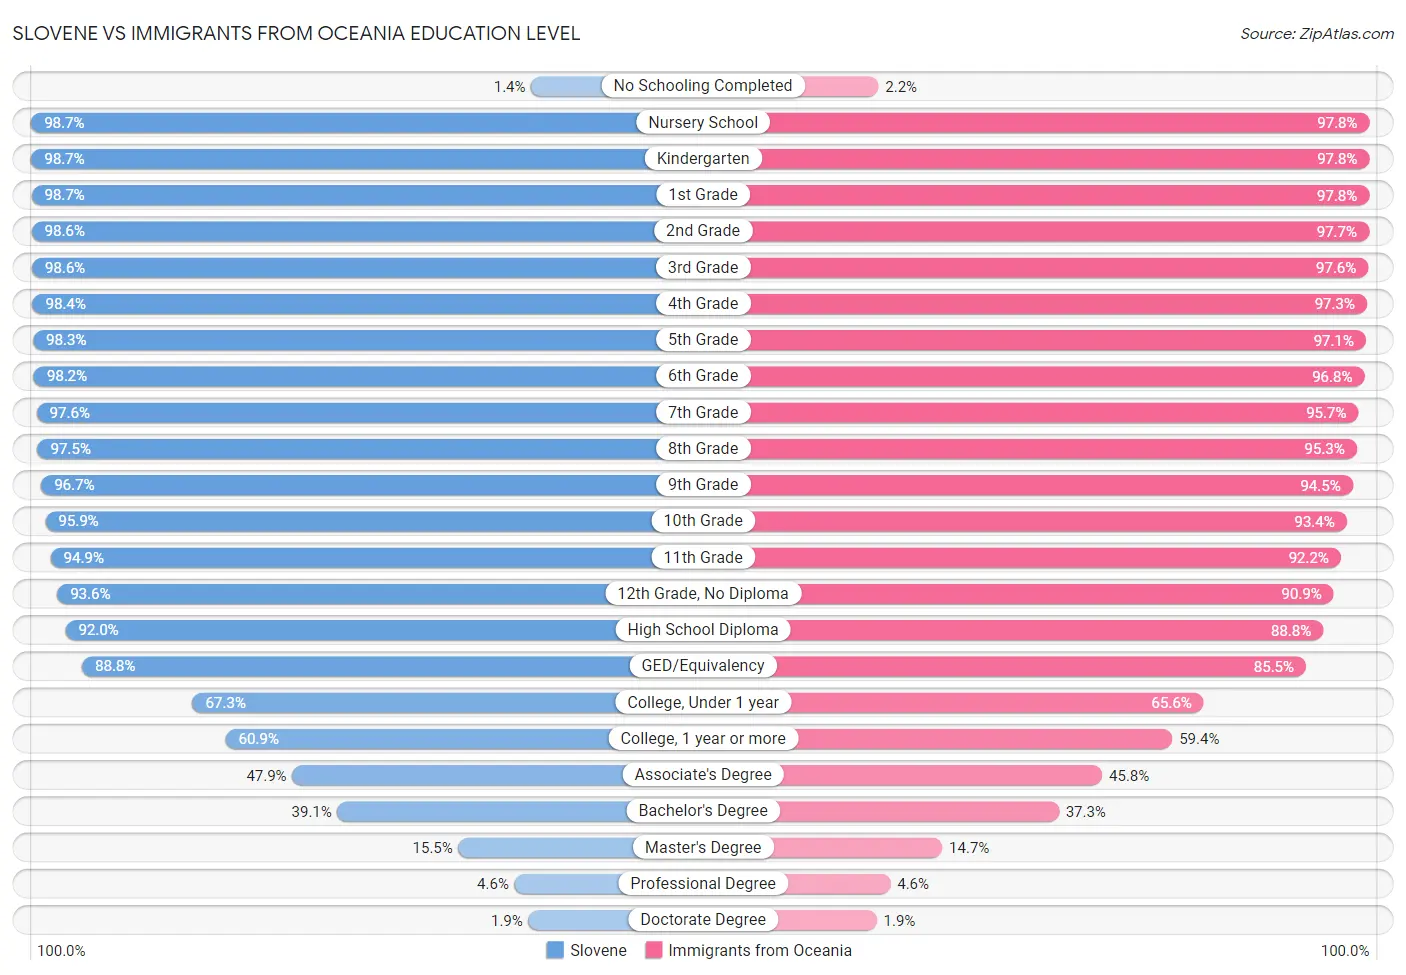 Slovene vs Immigrants from Oceania Education Level